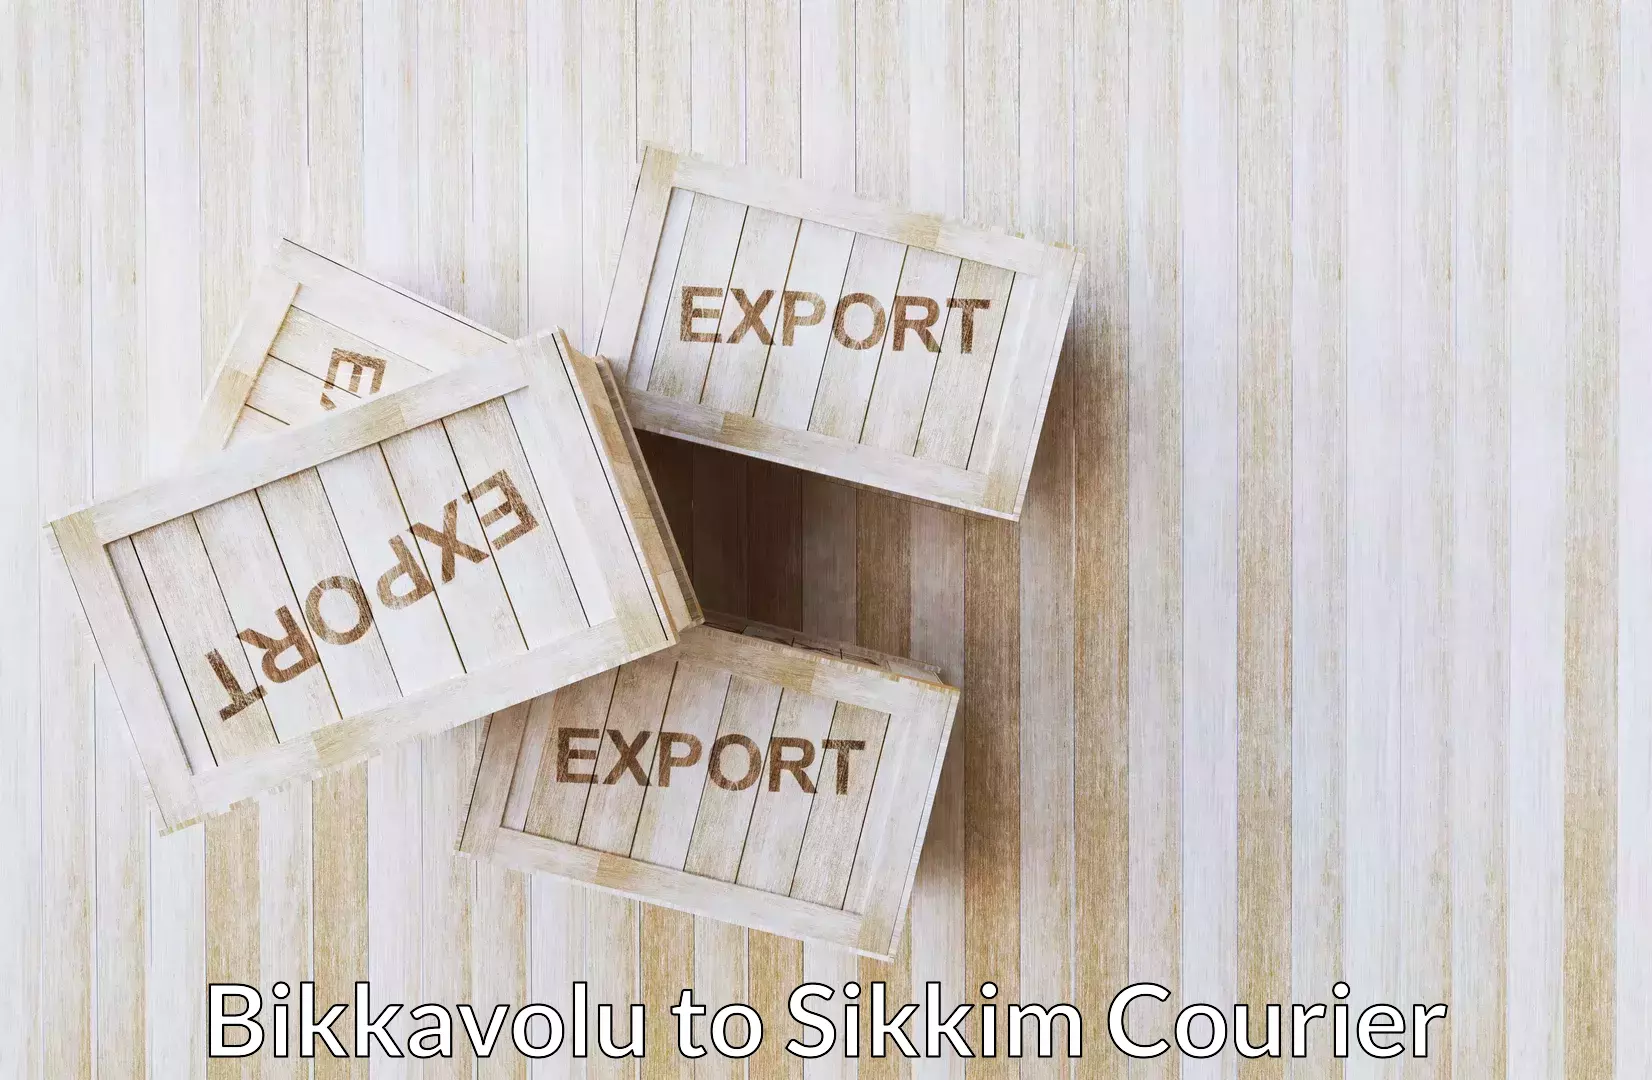 Furniture shipping services Bikkavolu to North Sikkim